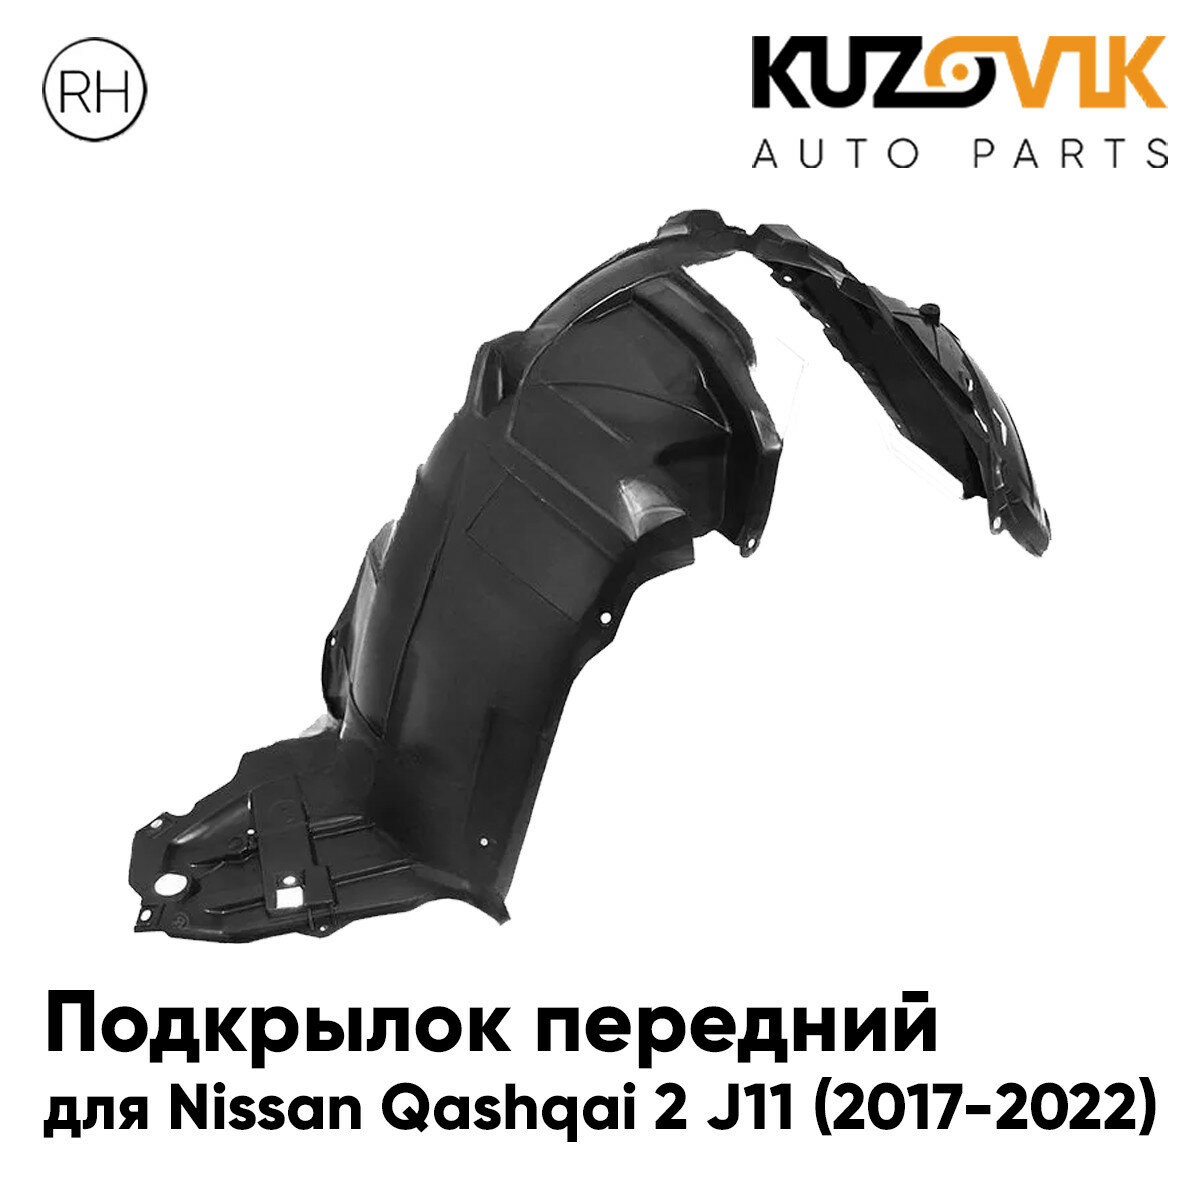 Подкрылок передний для Ниссан Кашкай Nissan Qashqai 2 J11 (2017-2022) правый